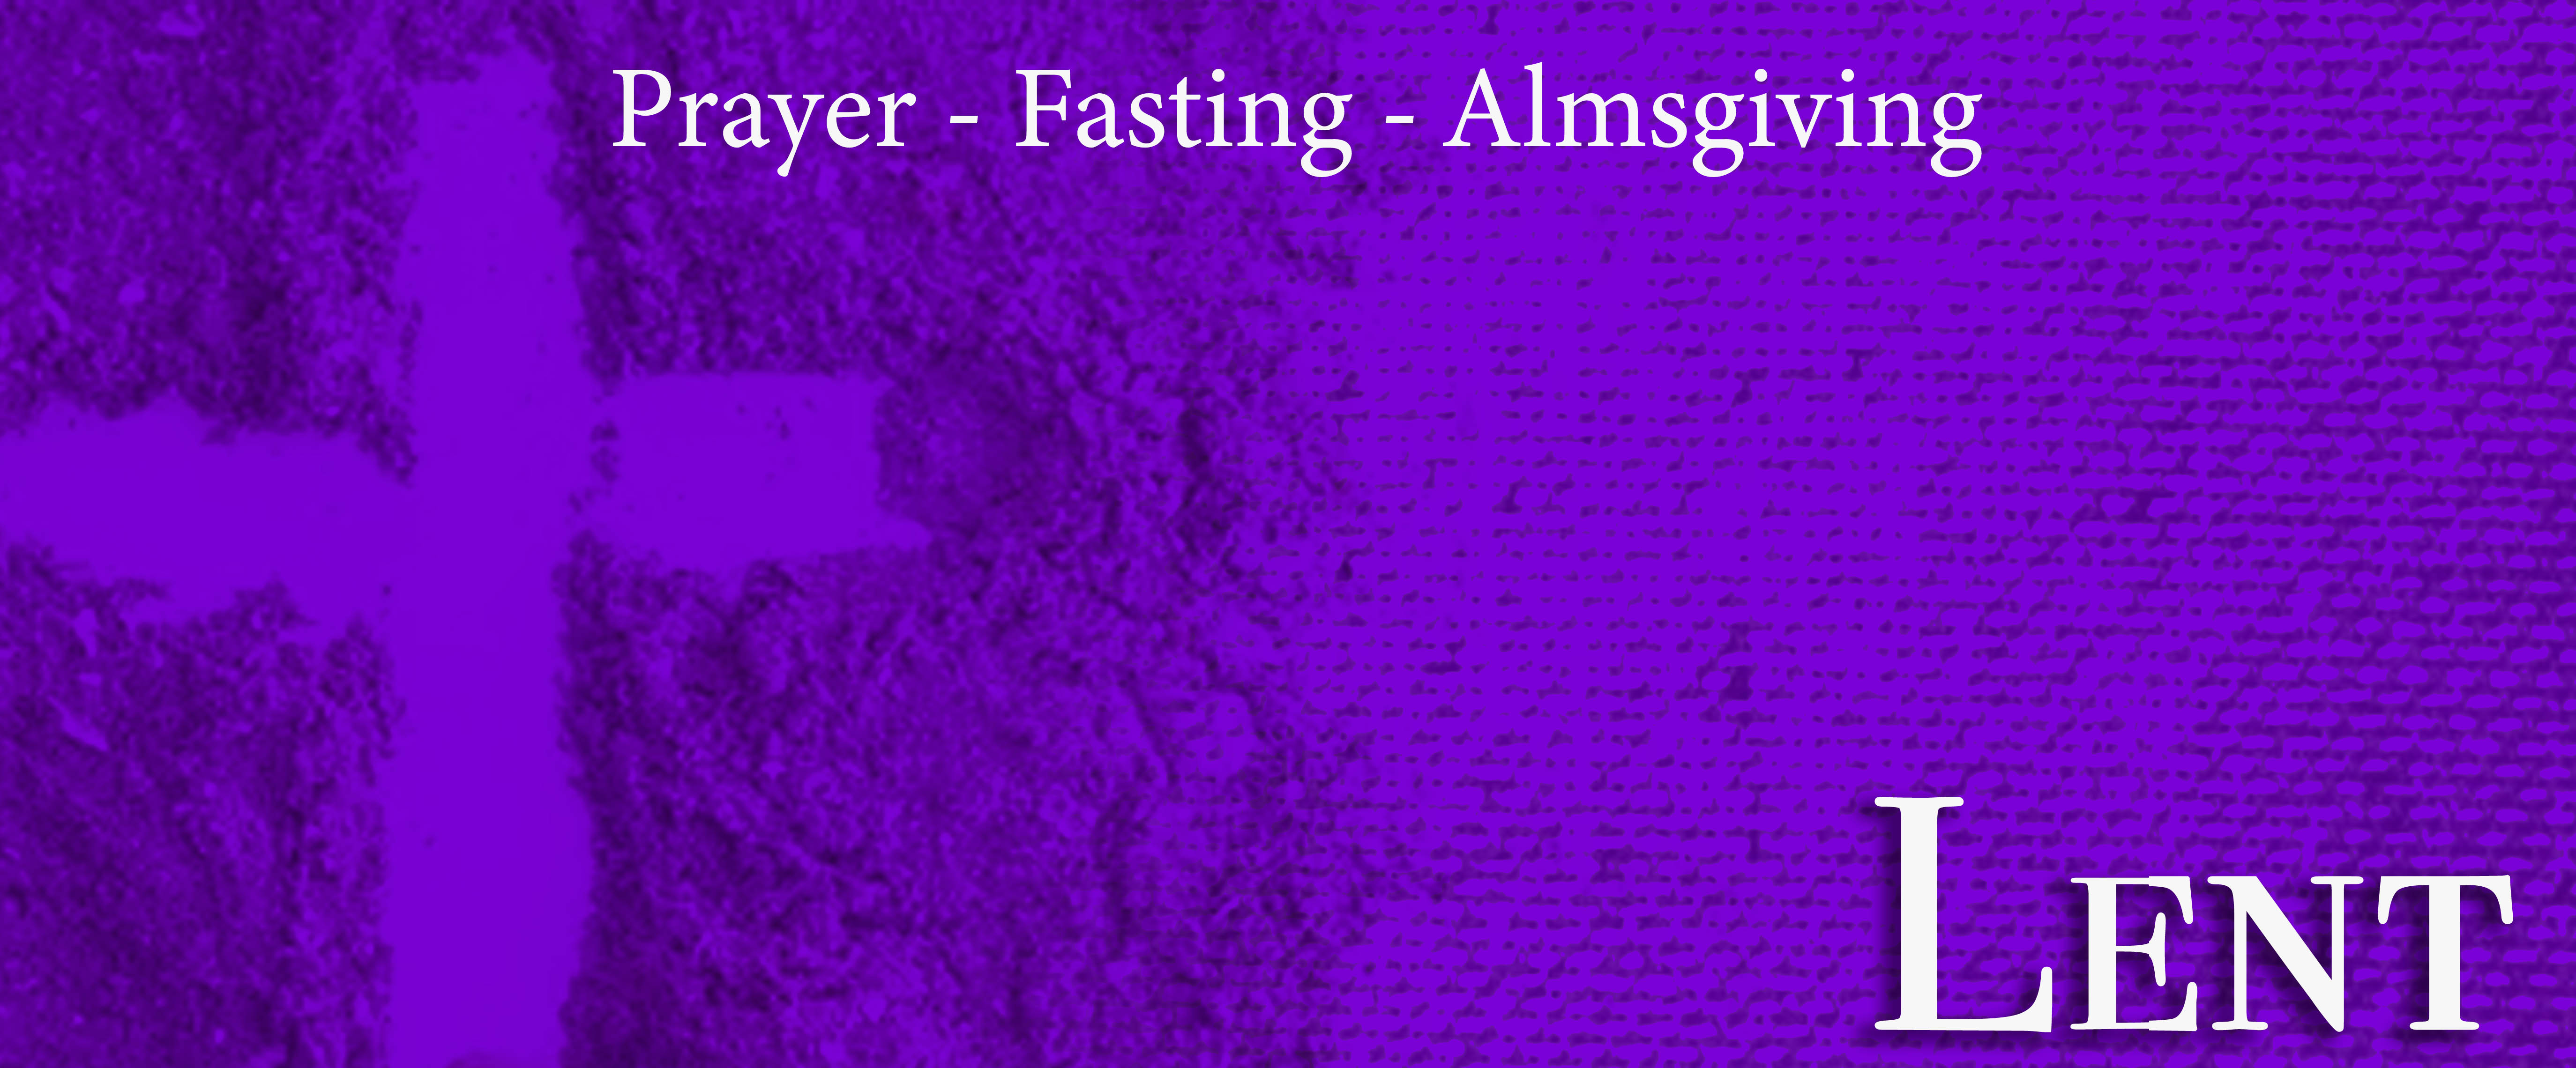 Lent - Prayer, Fasting, Almsgiving